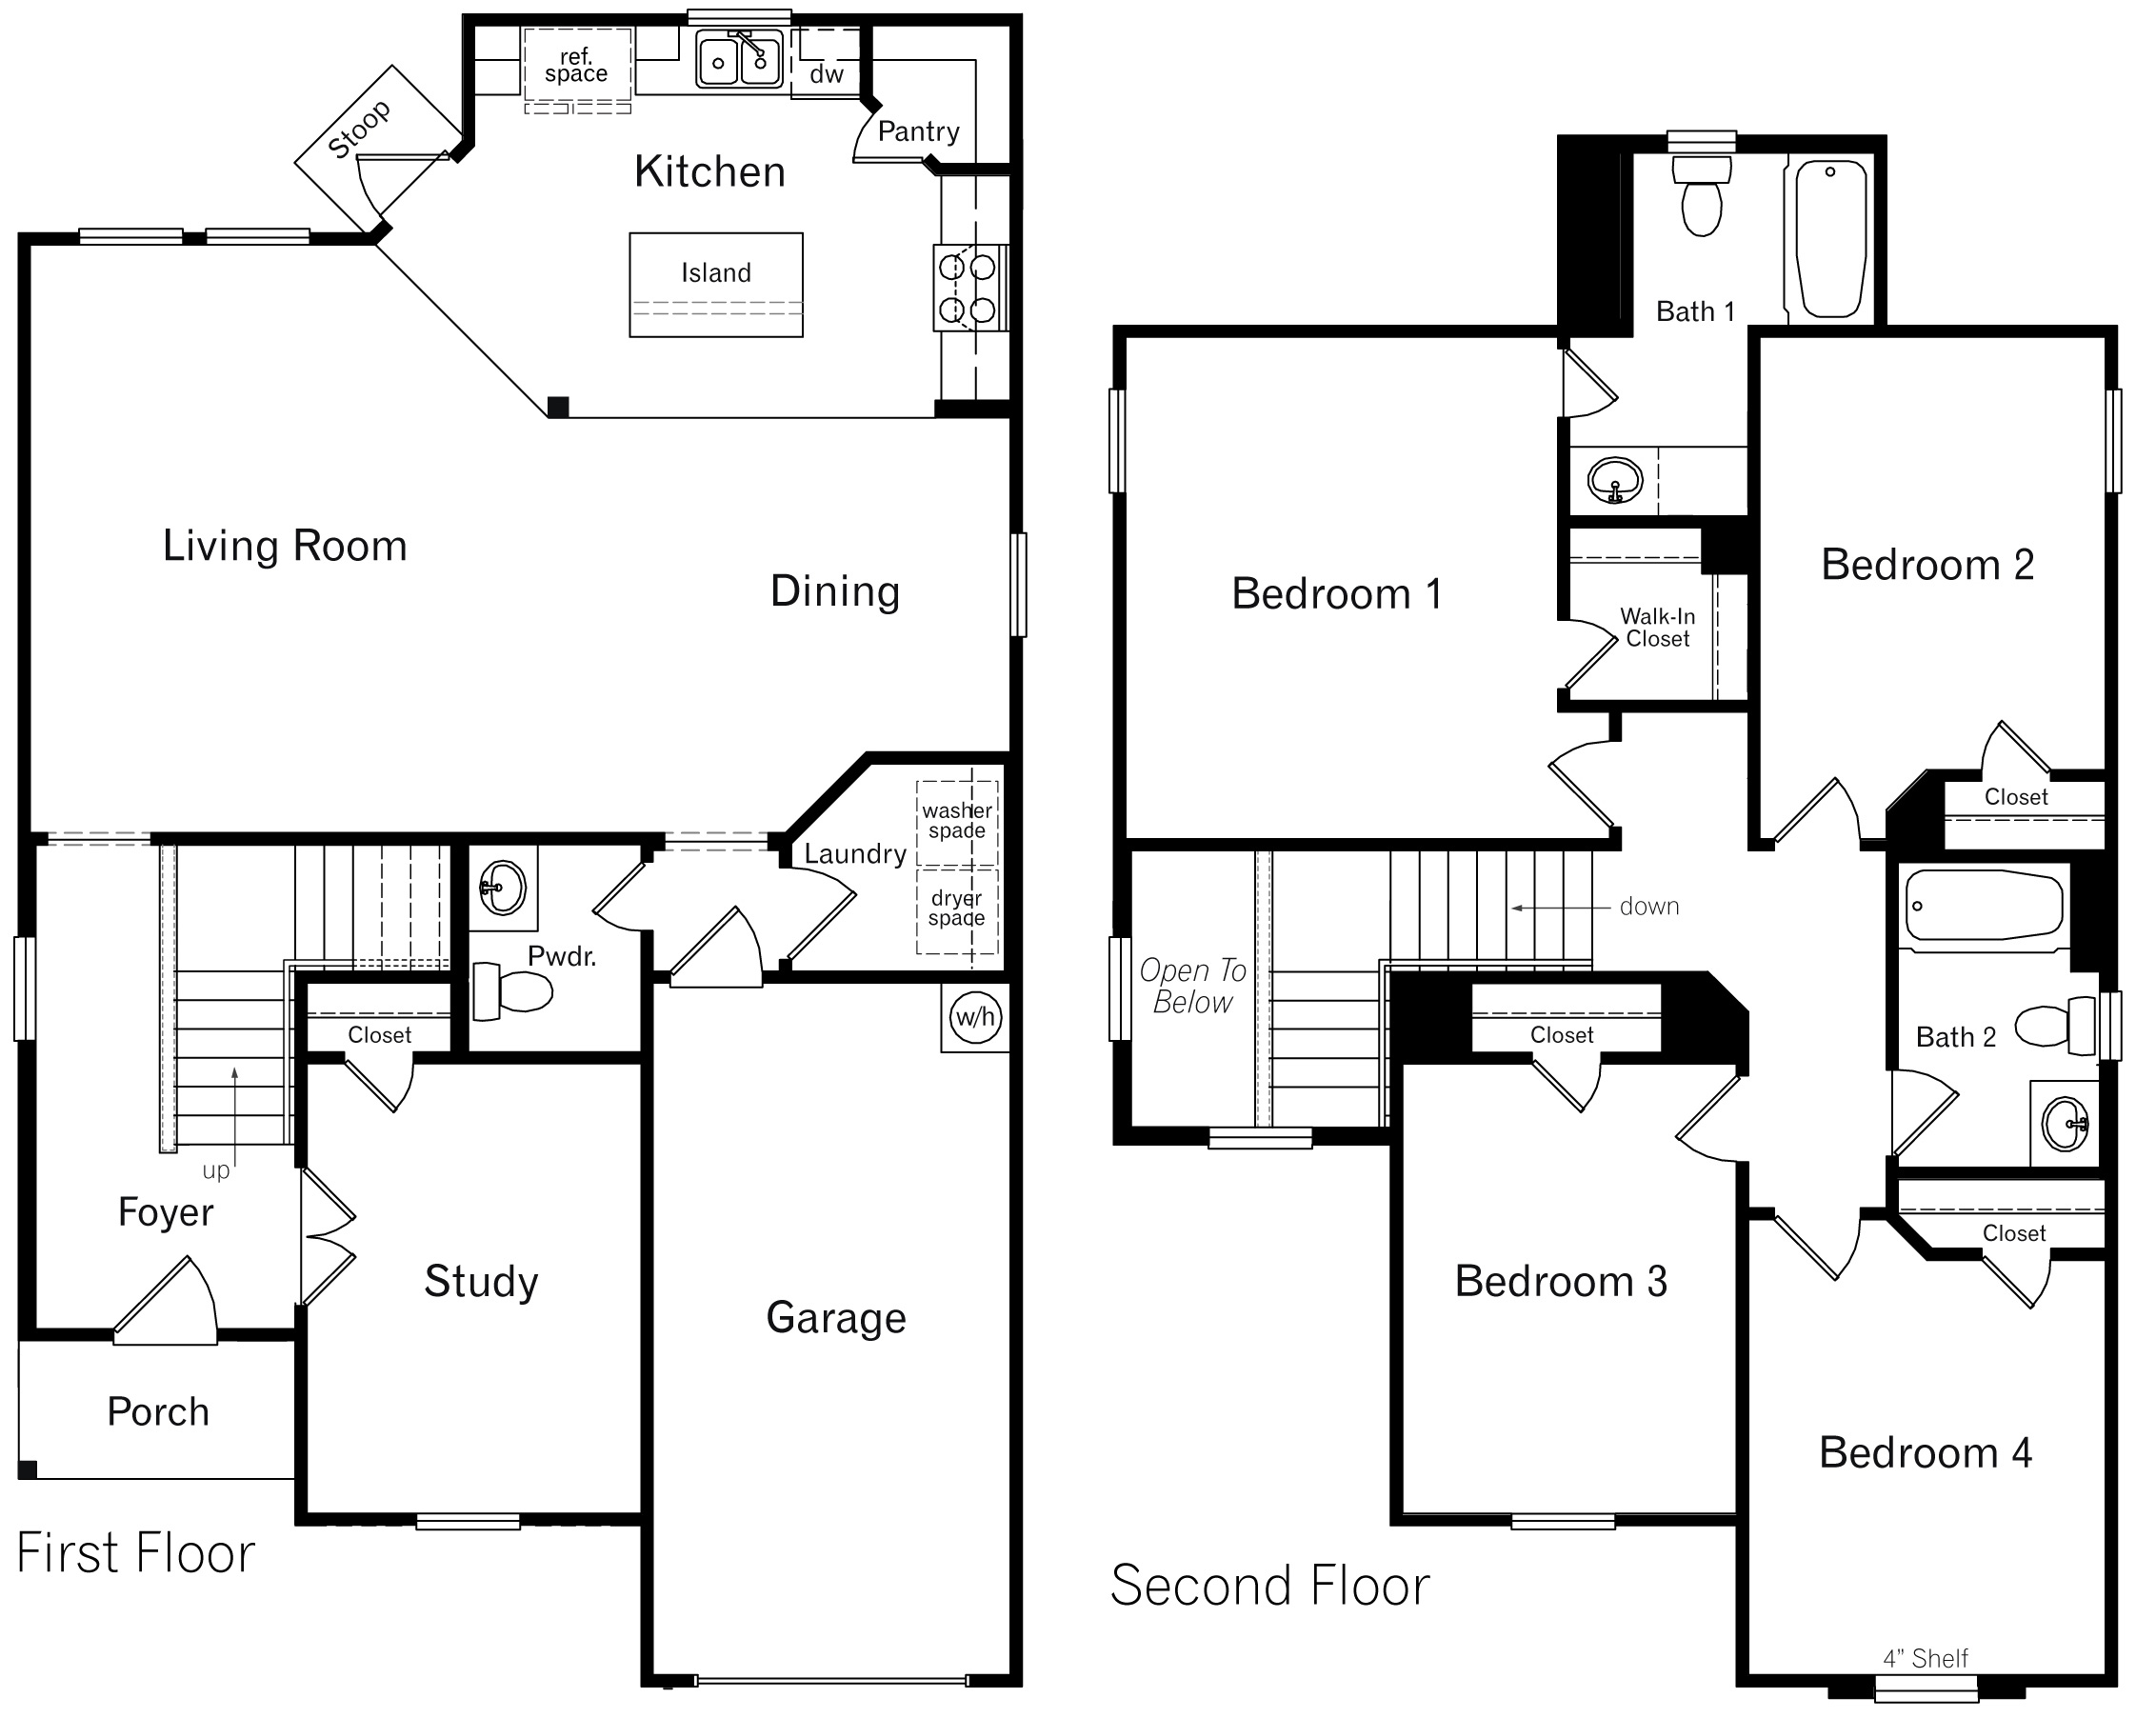 DR Horton San Antonio Laurel Vistas the ingleside floor plan 1900 square feet 4 bedrooms 2.5 bathroom 2 story 1 car garage